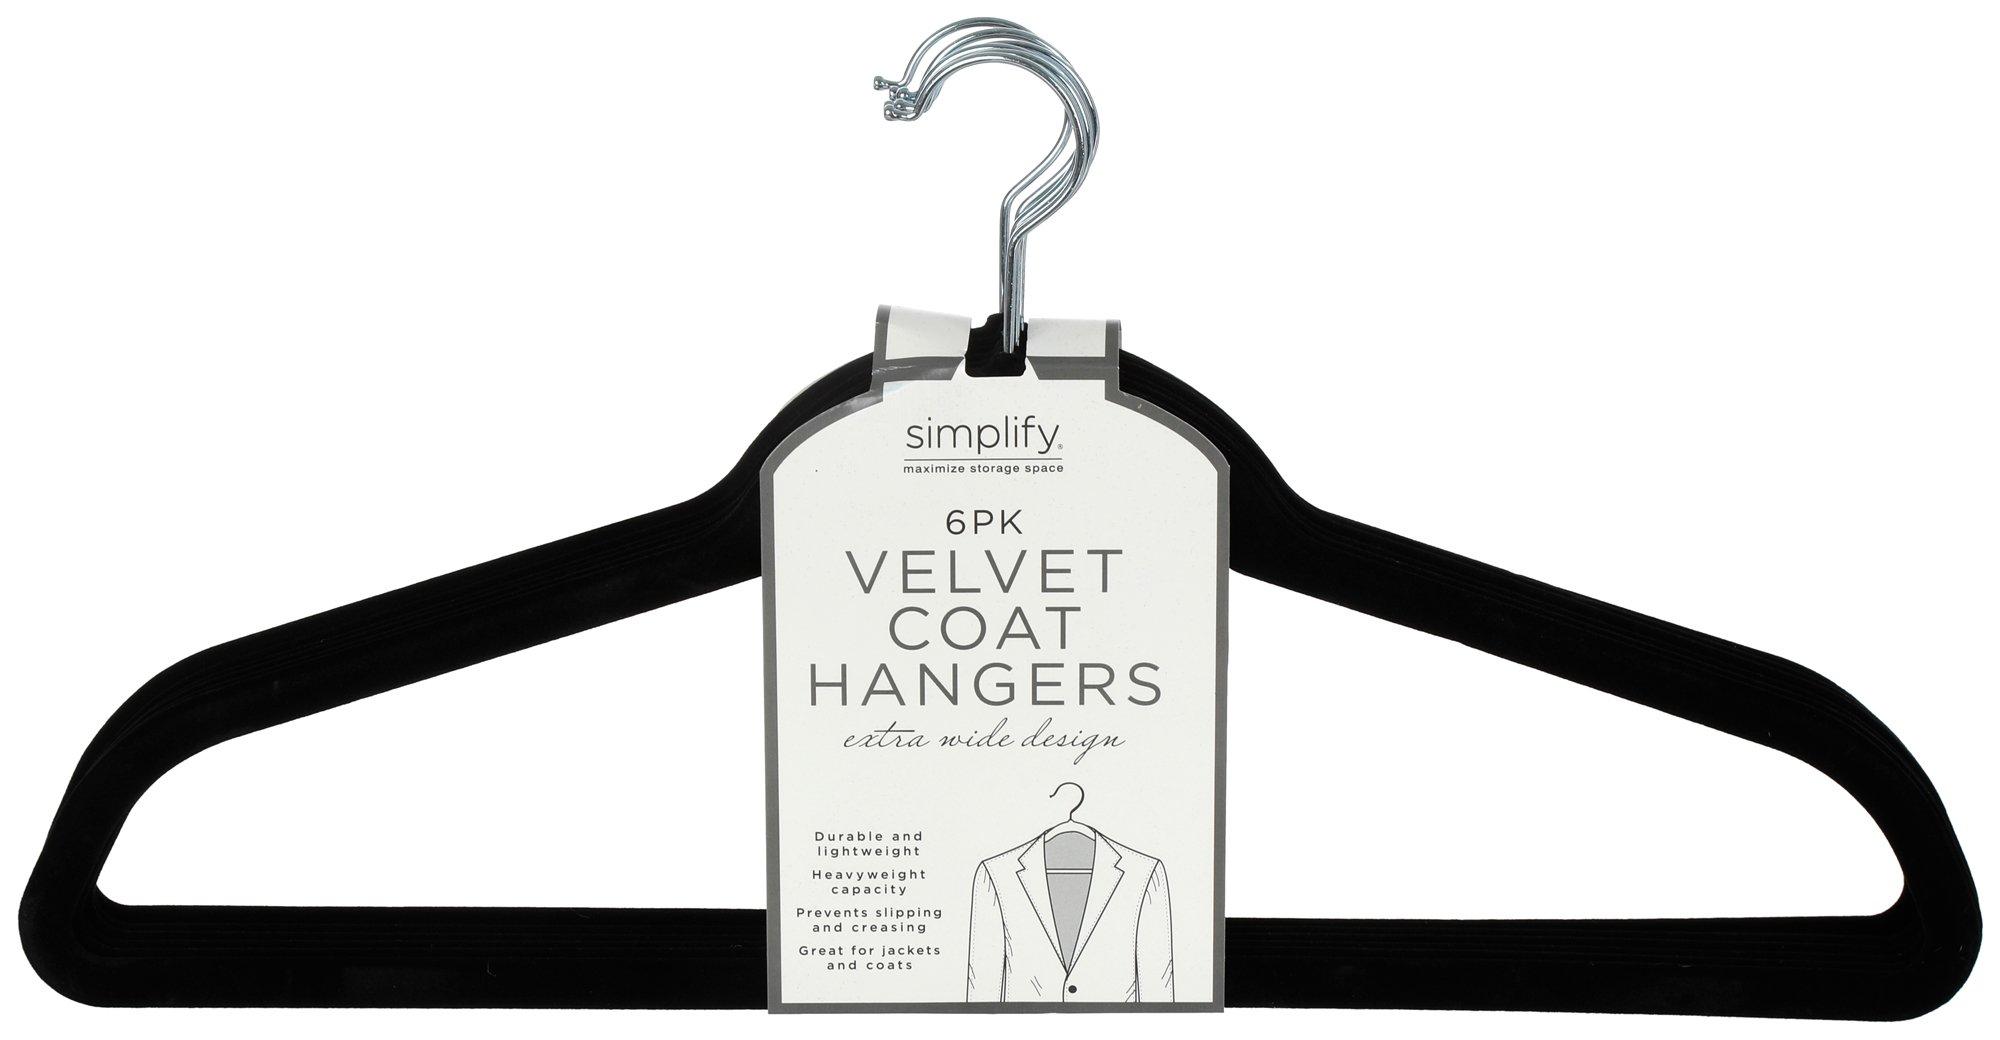 6 Pk Velvet Coat Hangers